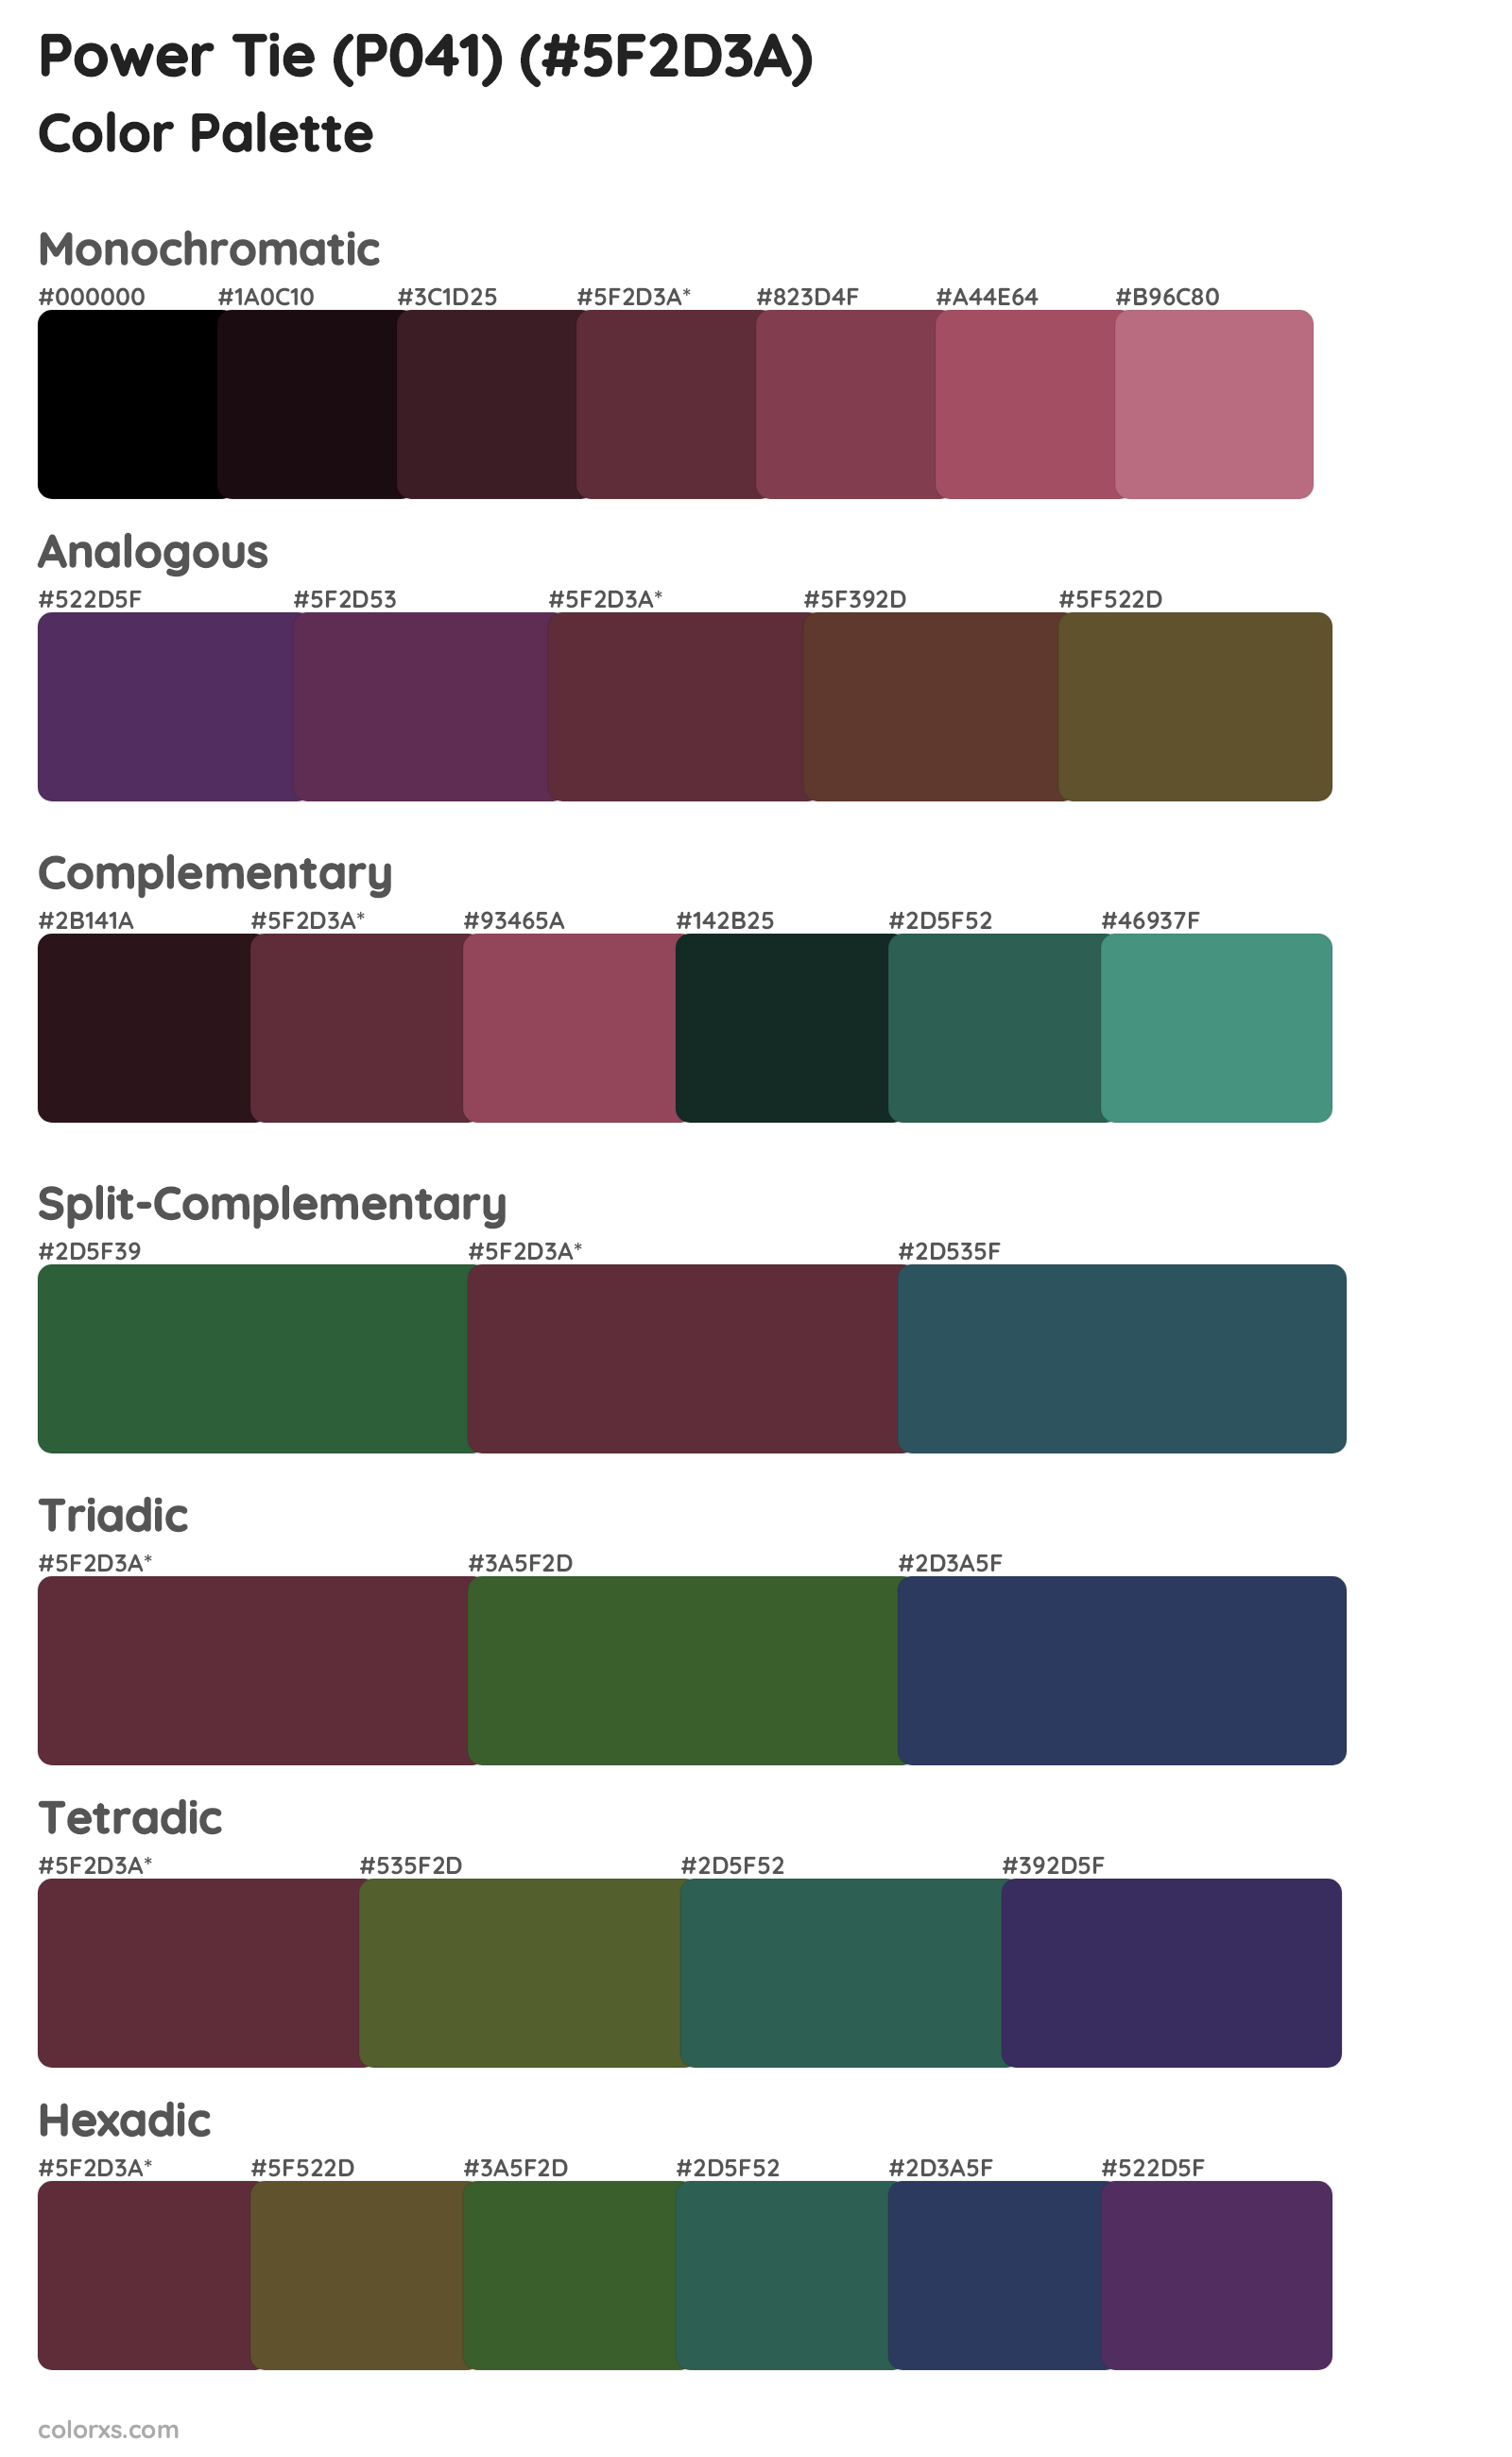 Power Tie (P041) Color Scheme Palettes